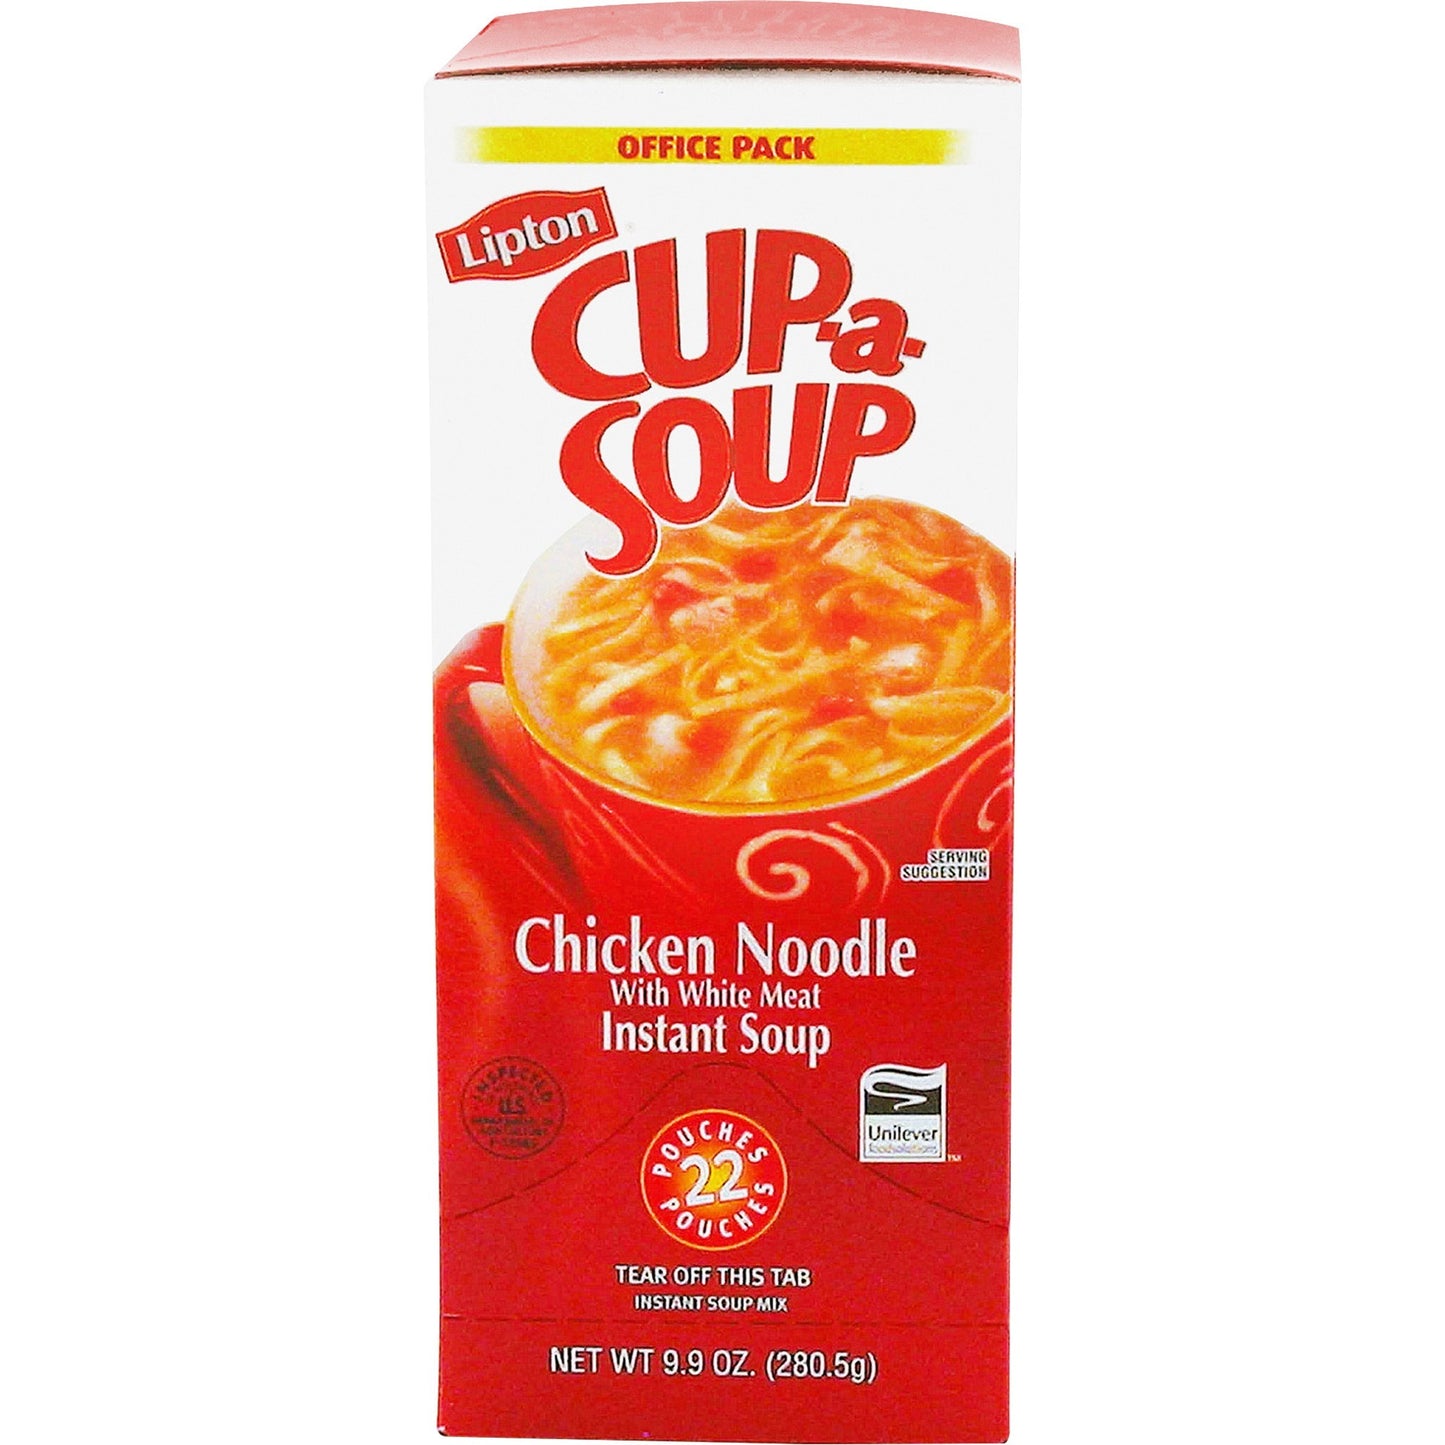 Lipton&reg; Cup-a-Soup Chicken Noodle Instant Soup